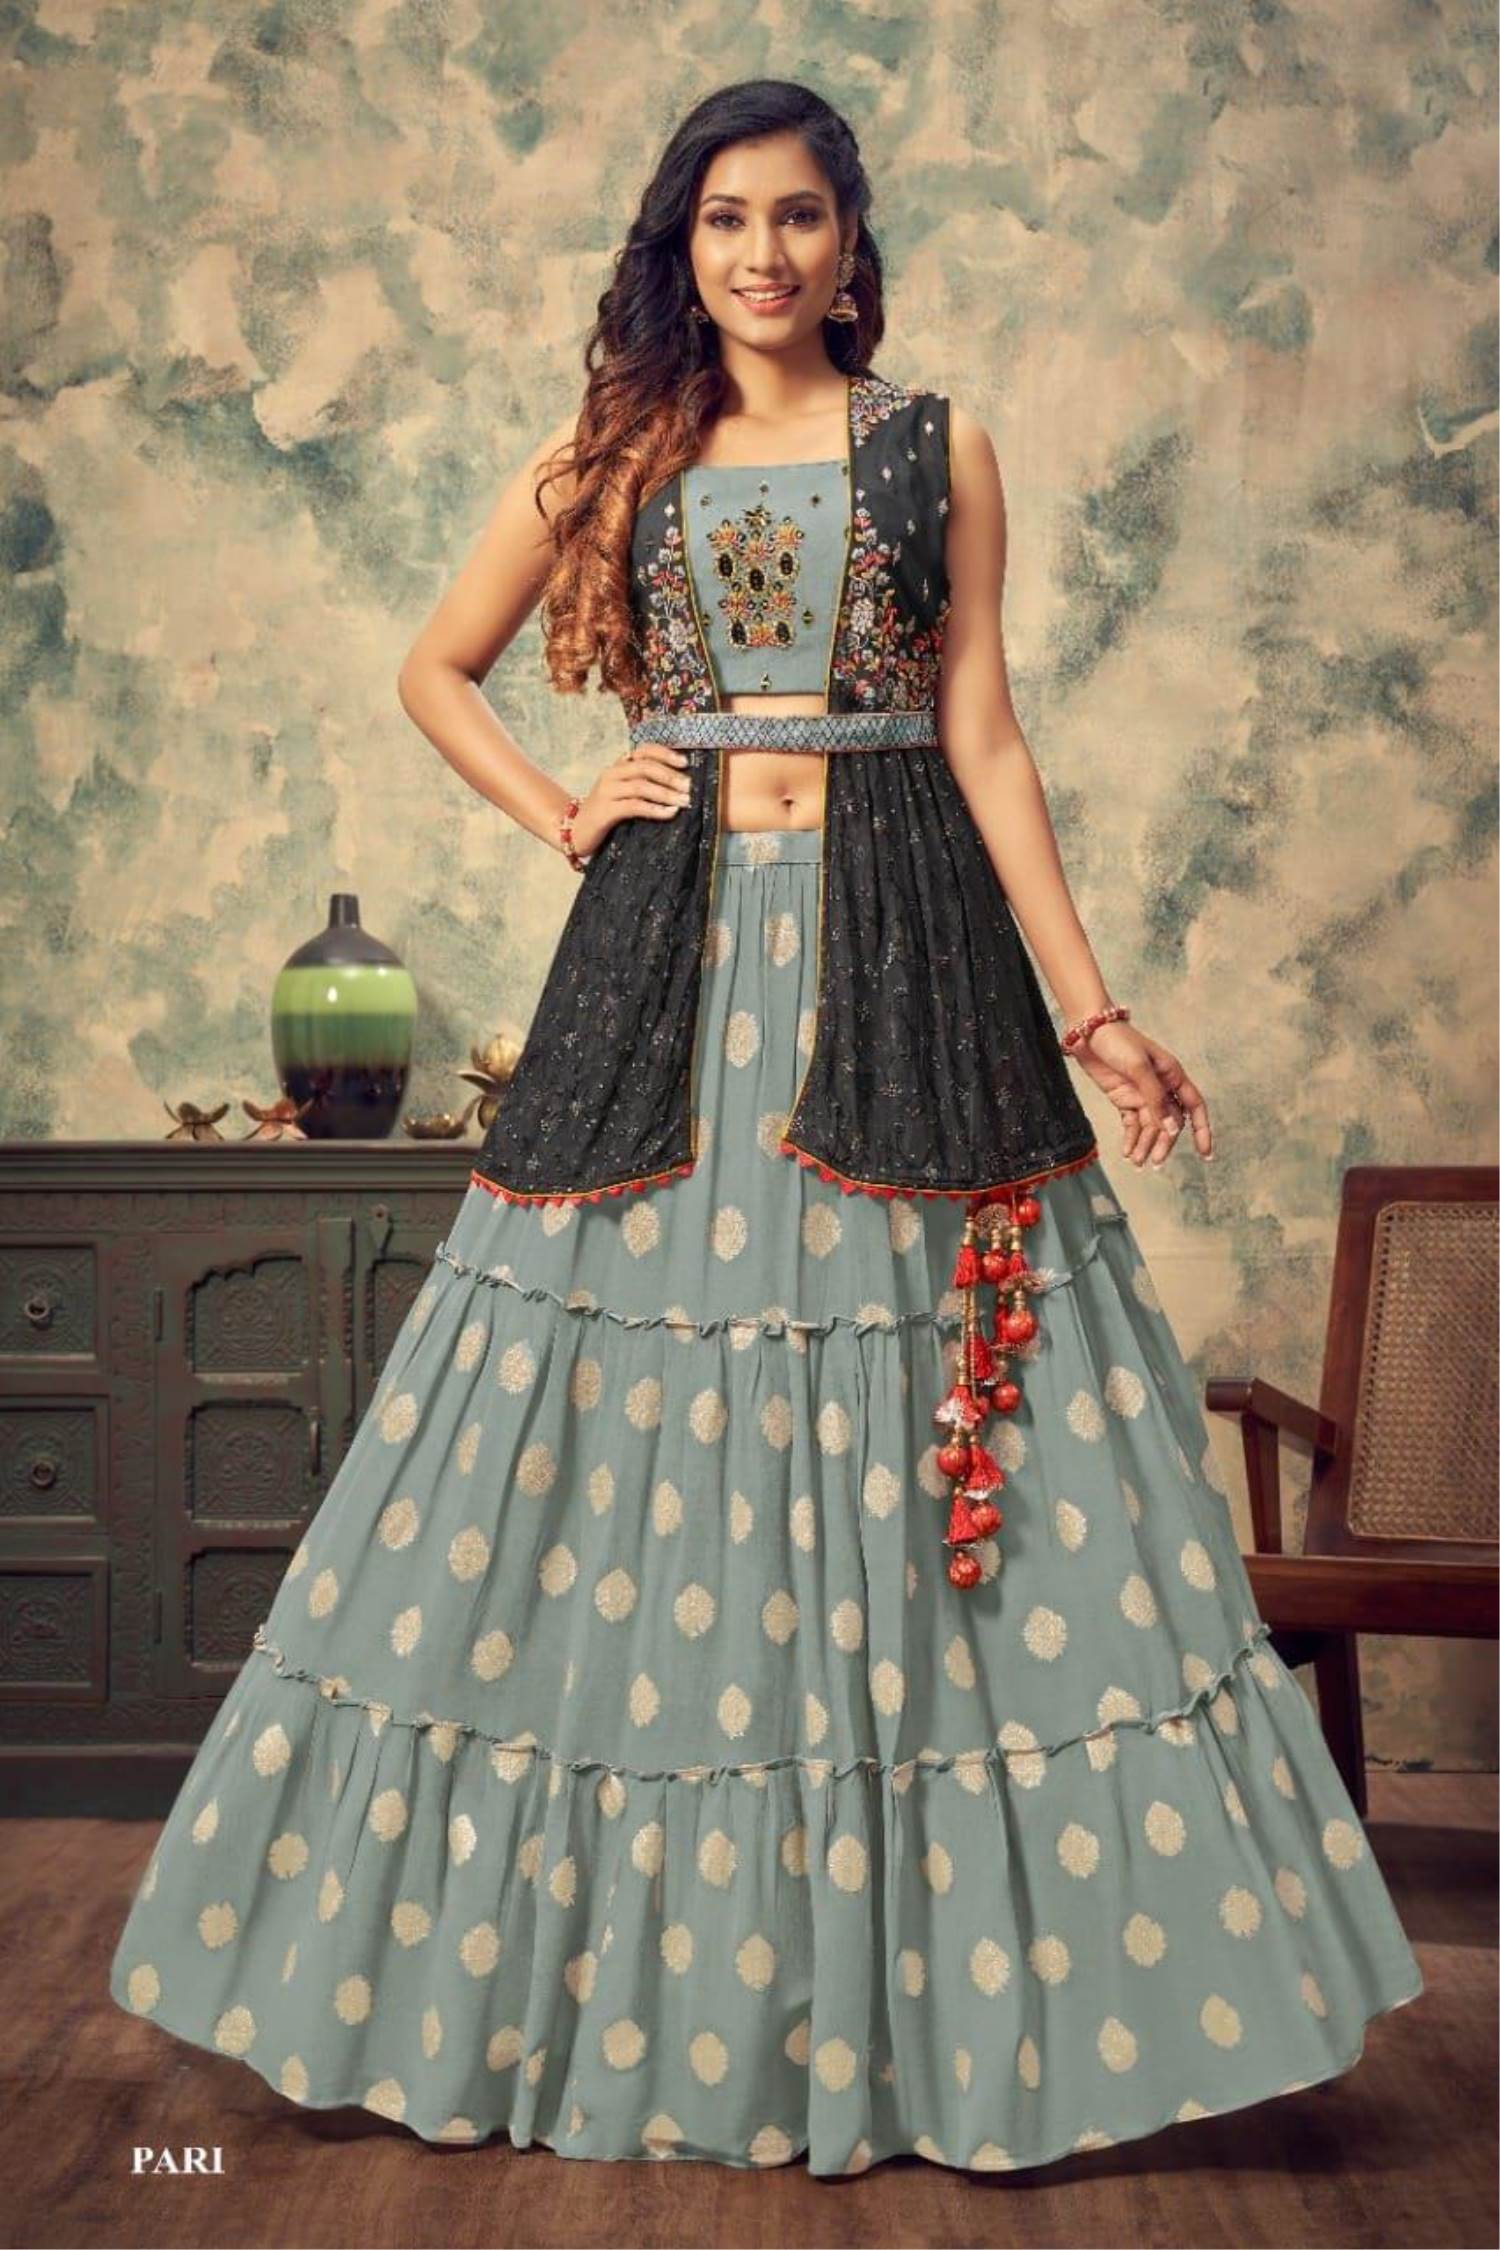 Indian Koti Lehenga at Best Price in Surat, Gujarat | Sadabahar Fashion